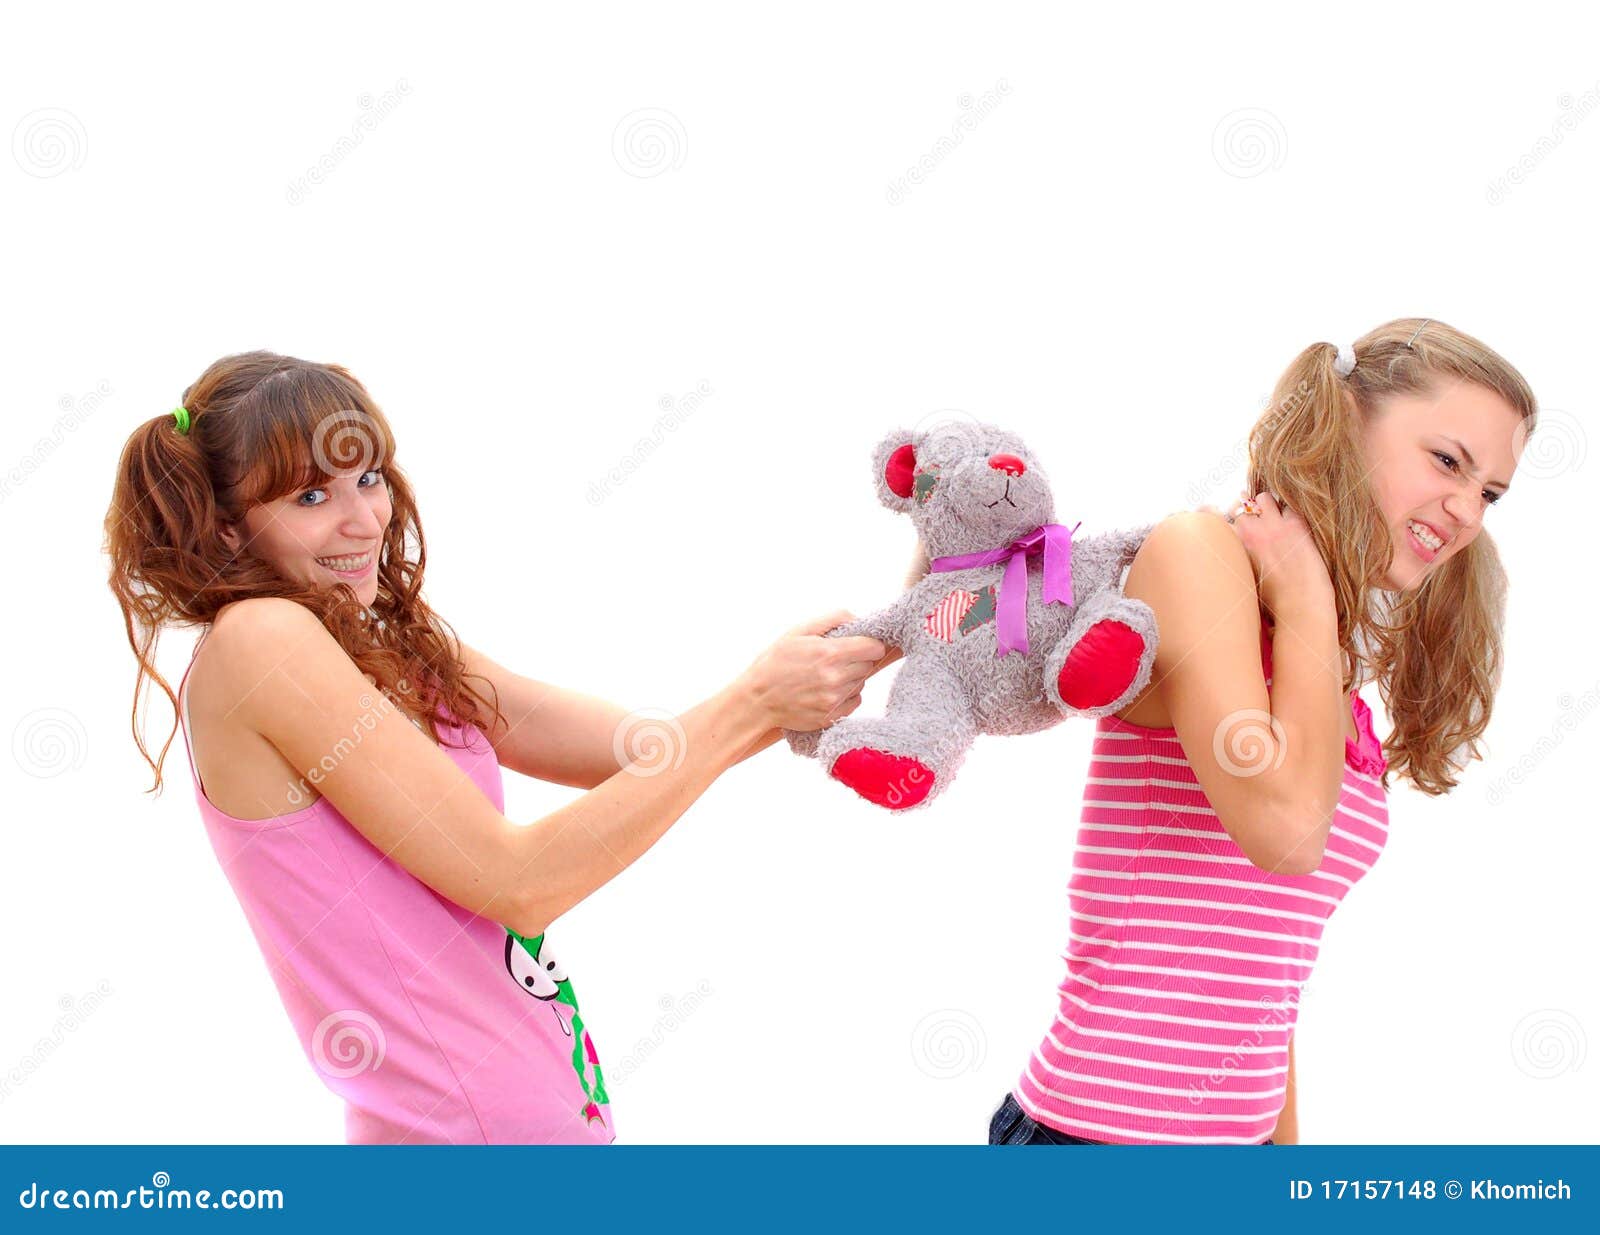 Включи против девочек. Девушки ссорятся из за одежды. Две девочки поссорились. Девочки поссорились картинка в магазине. Две девочки ругаются картинки.